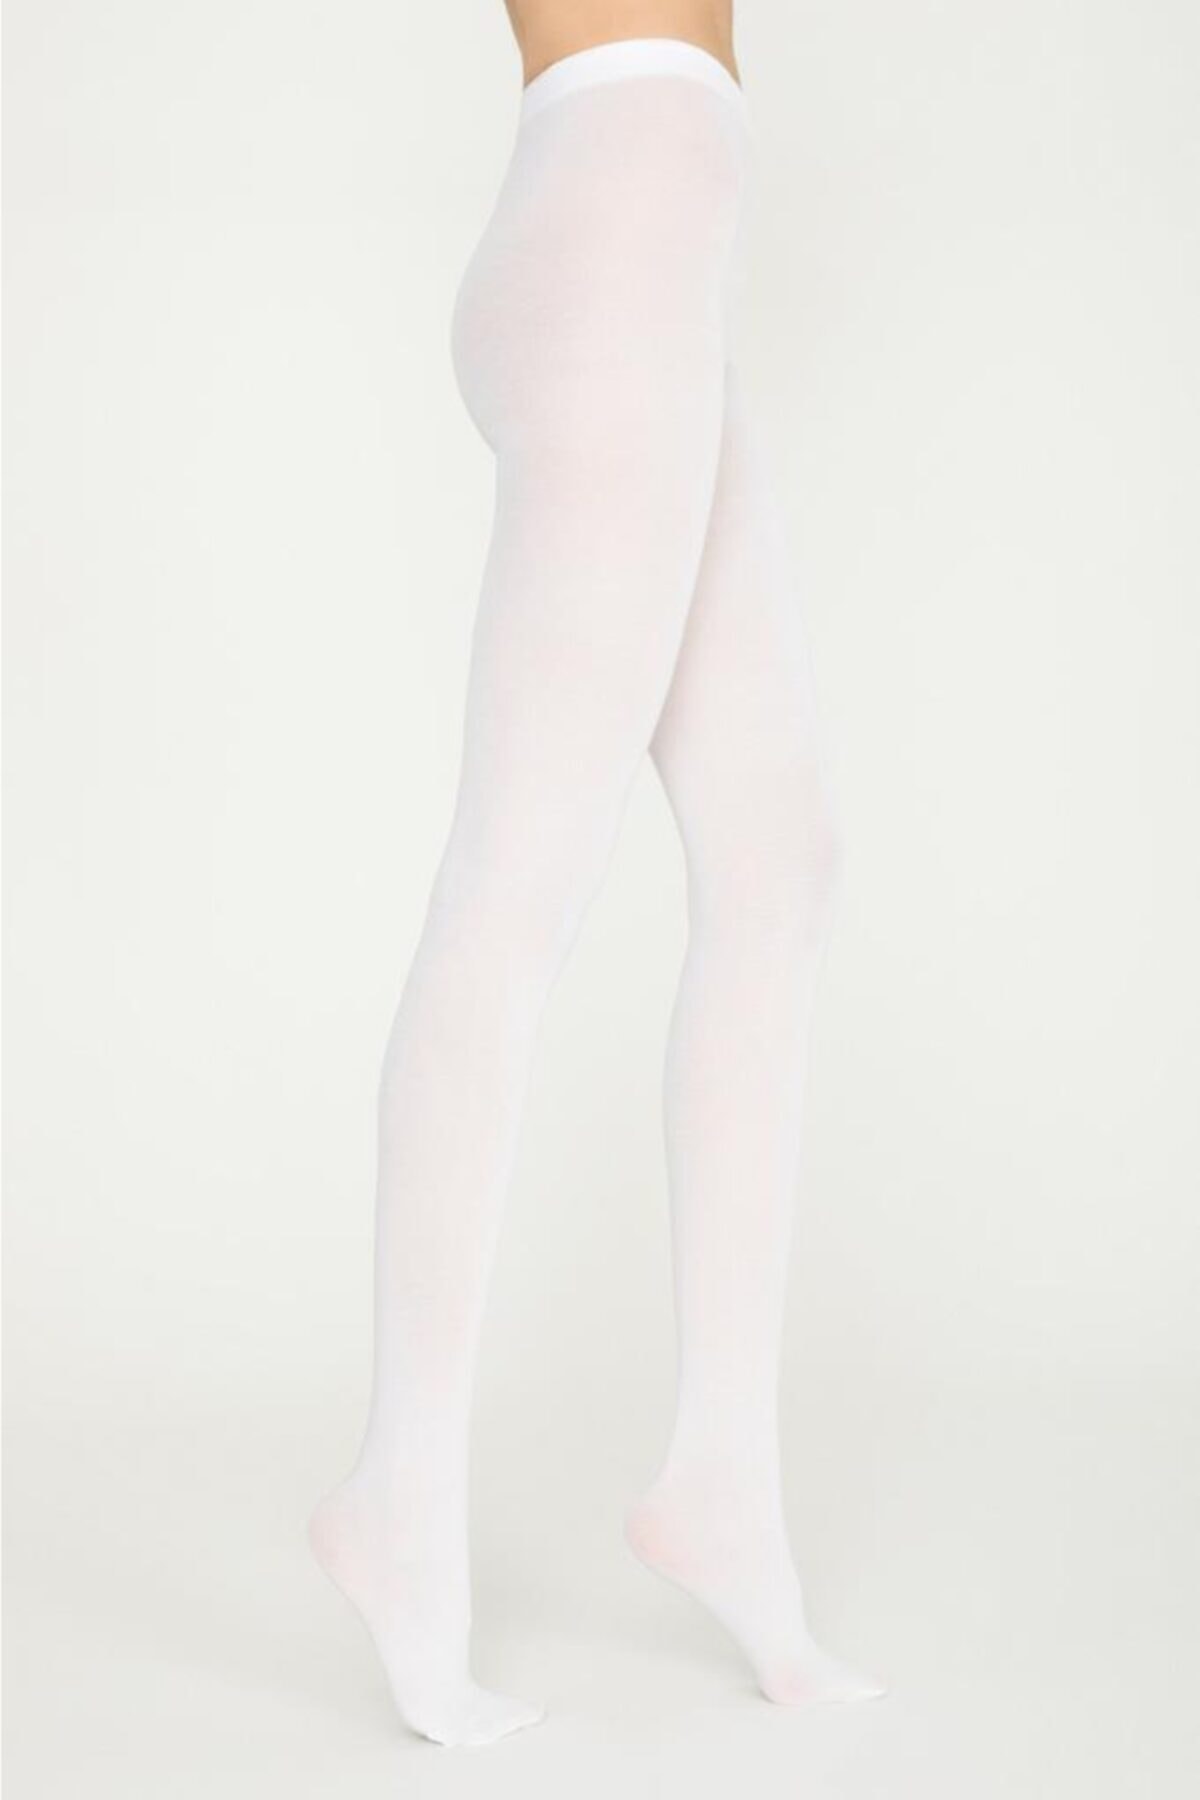 Penti Koton 60 Den Külotlu Çorap Pamuklu Mat Ağlı 2'li Paket Kadın 10-beyaz-xxl